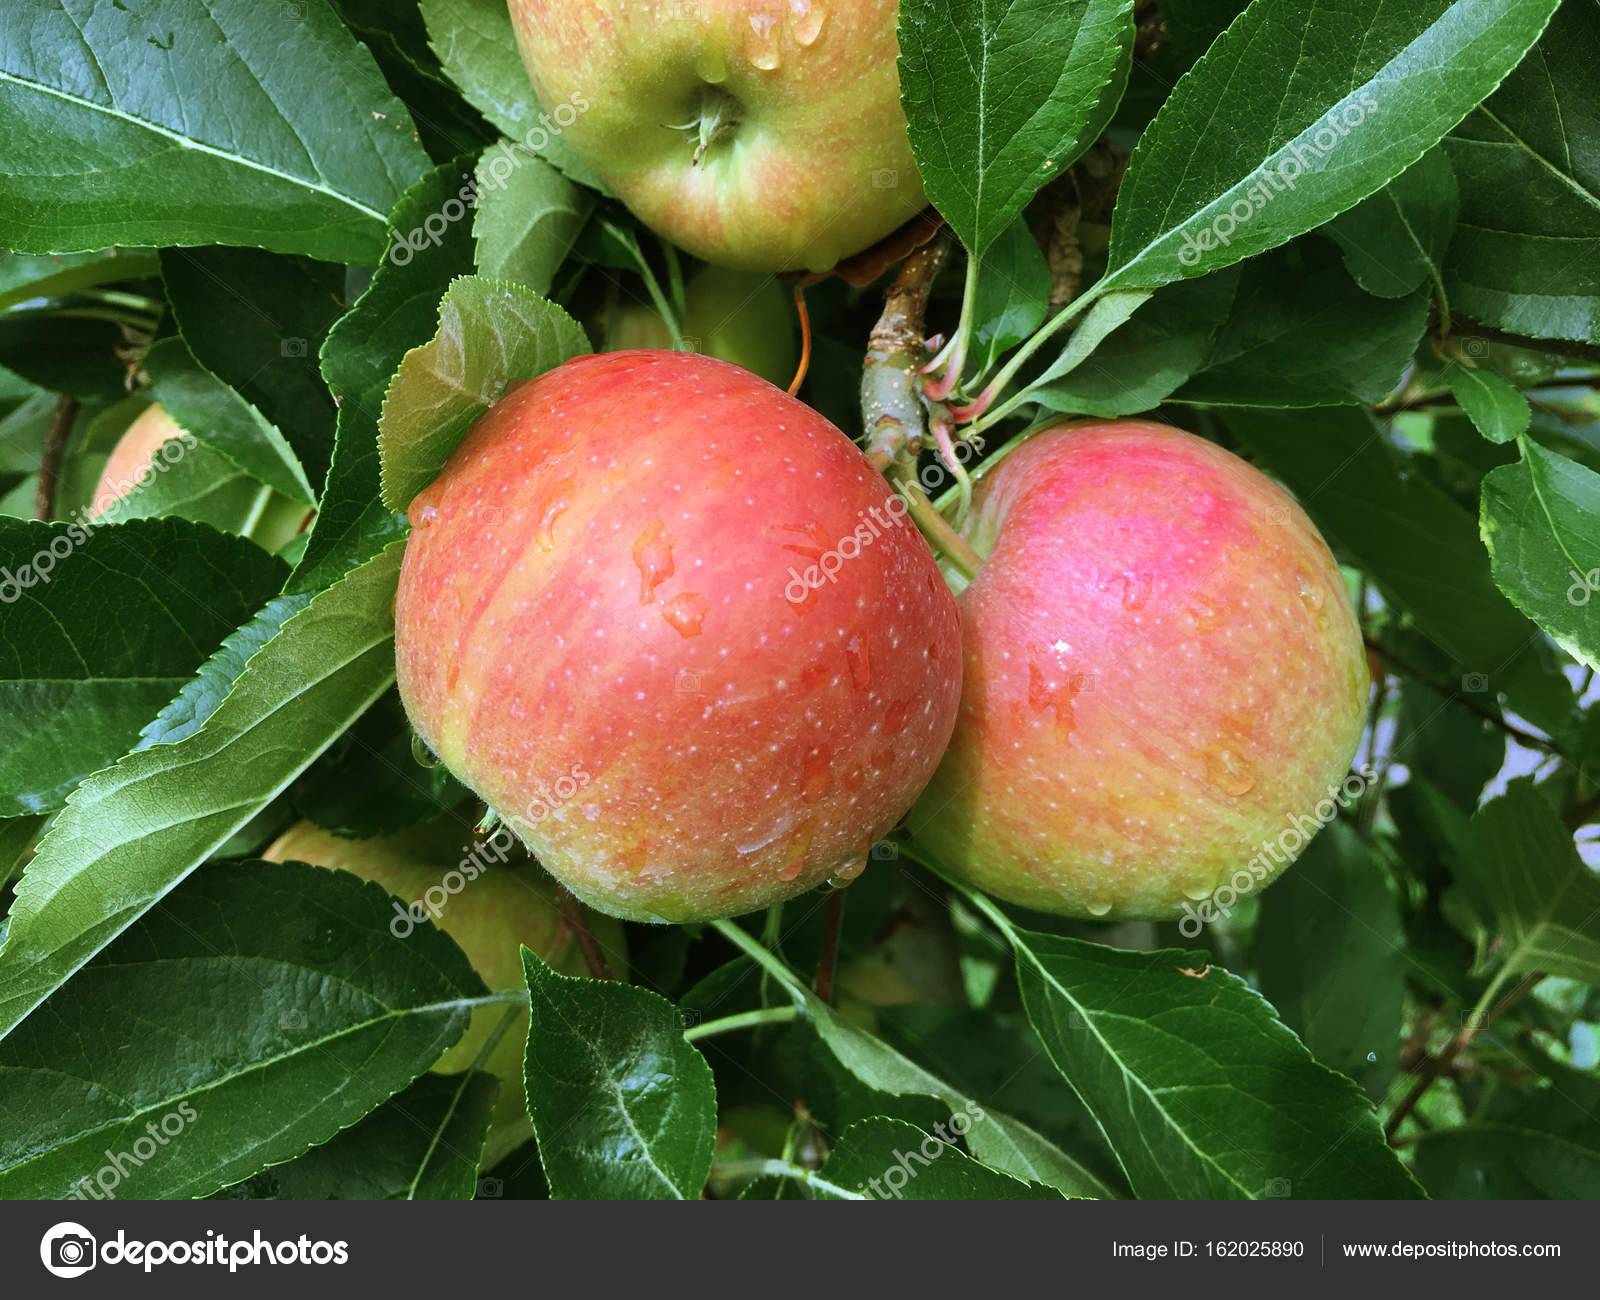 Яблоня фуджи: характеристики и описание сорта, особенности посадки и ухода за деревом, фото